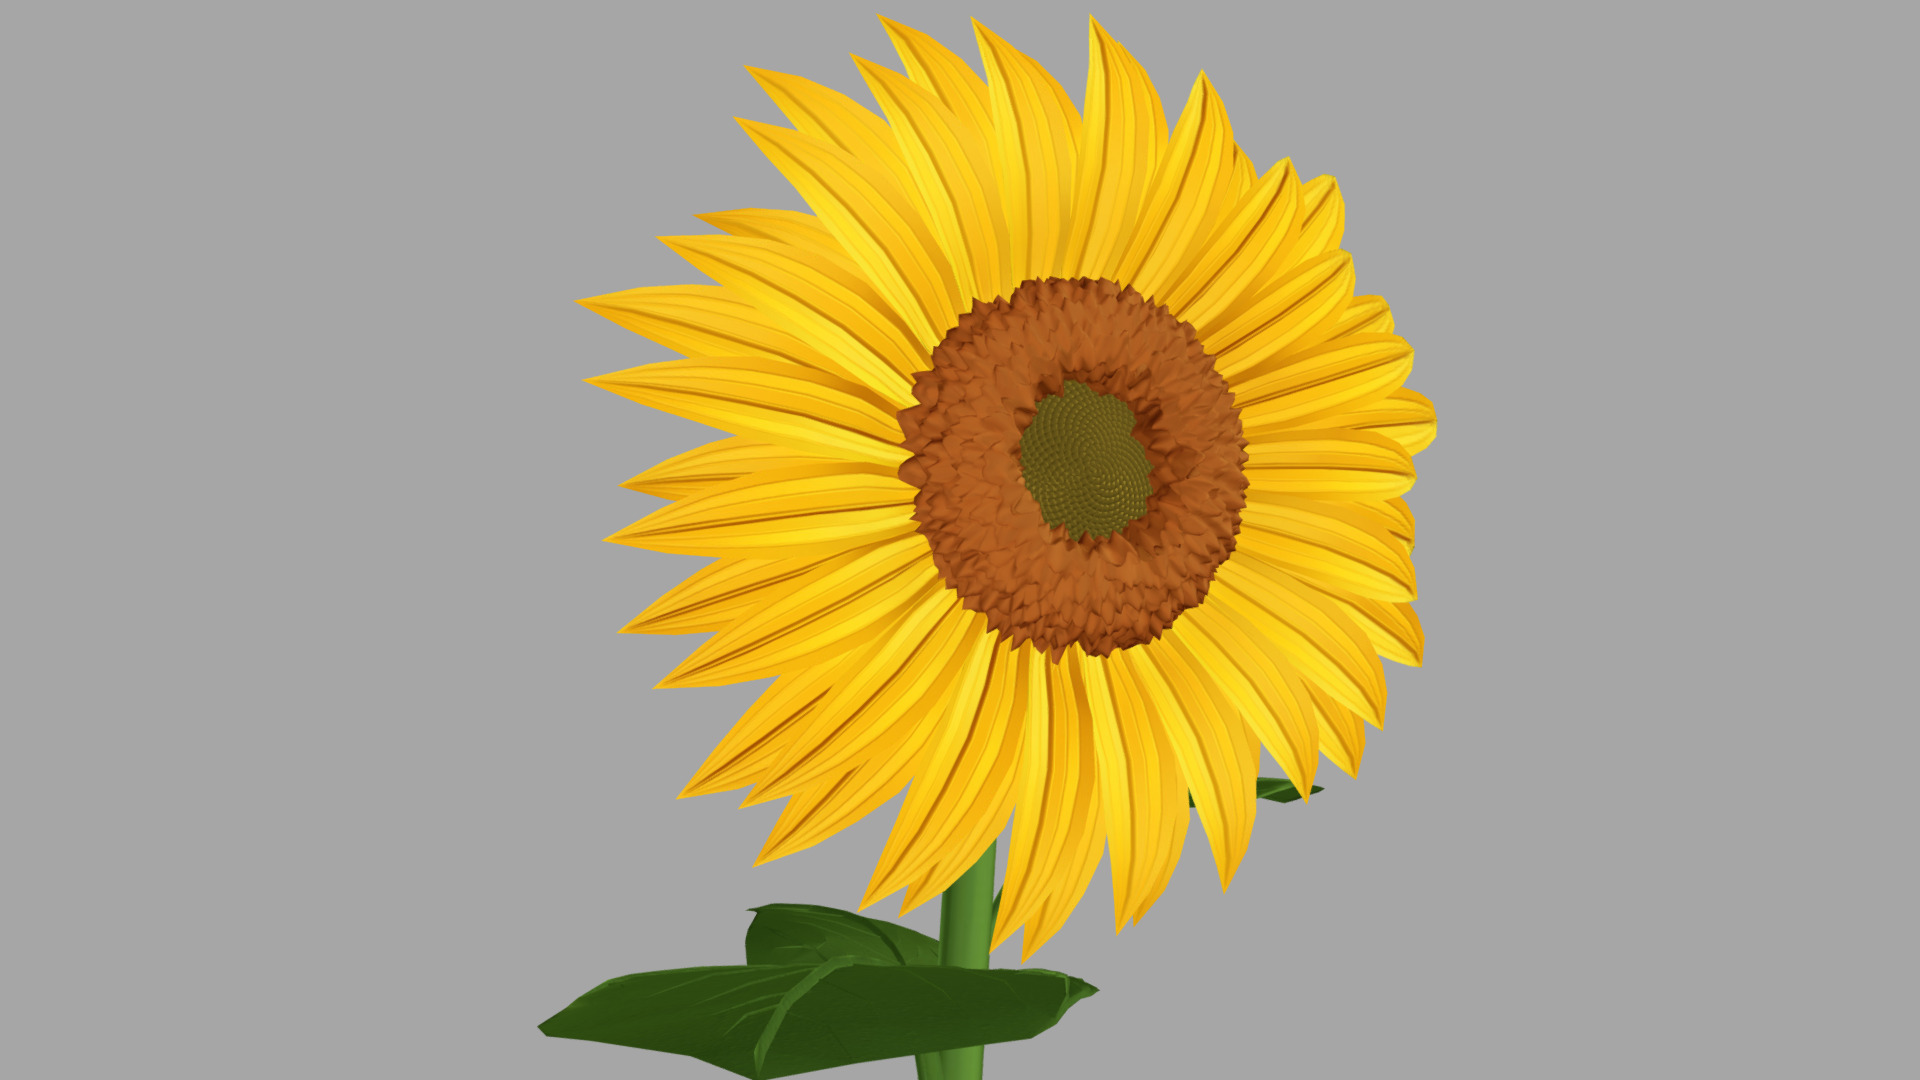 As Title - Cartoon-Styles Sunflower - Buy Royalty Free 3D model by NewDOF 3d model